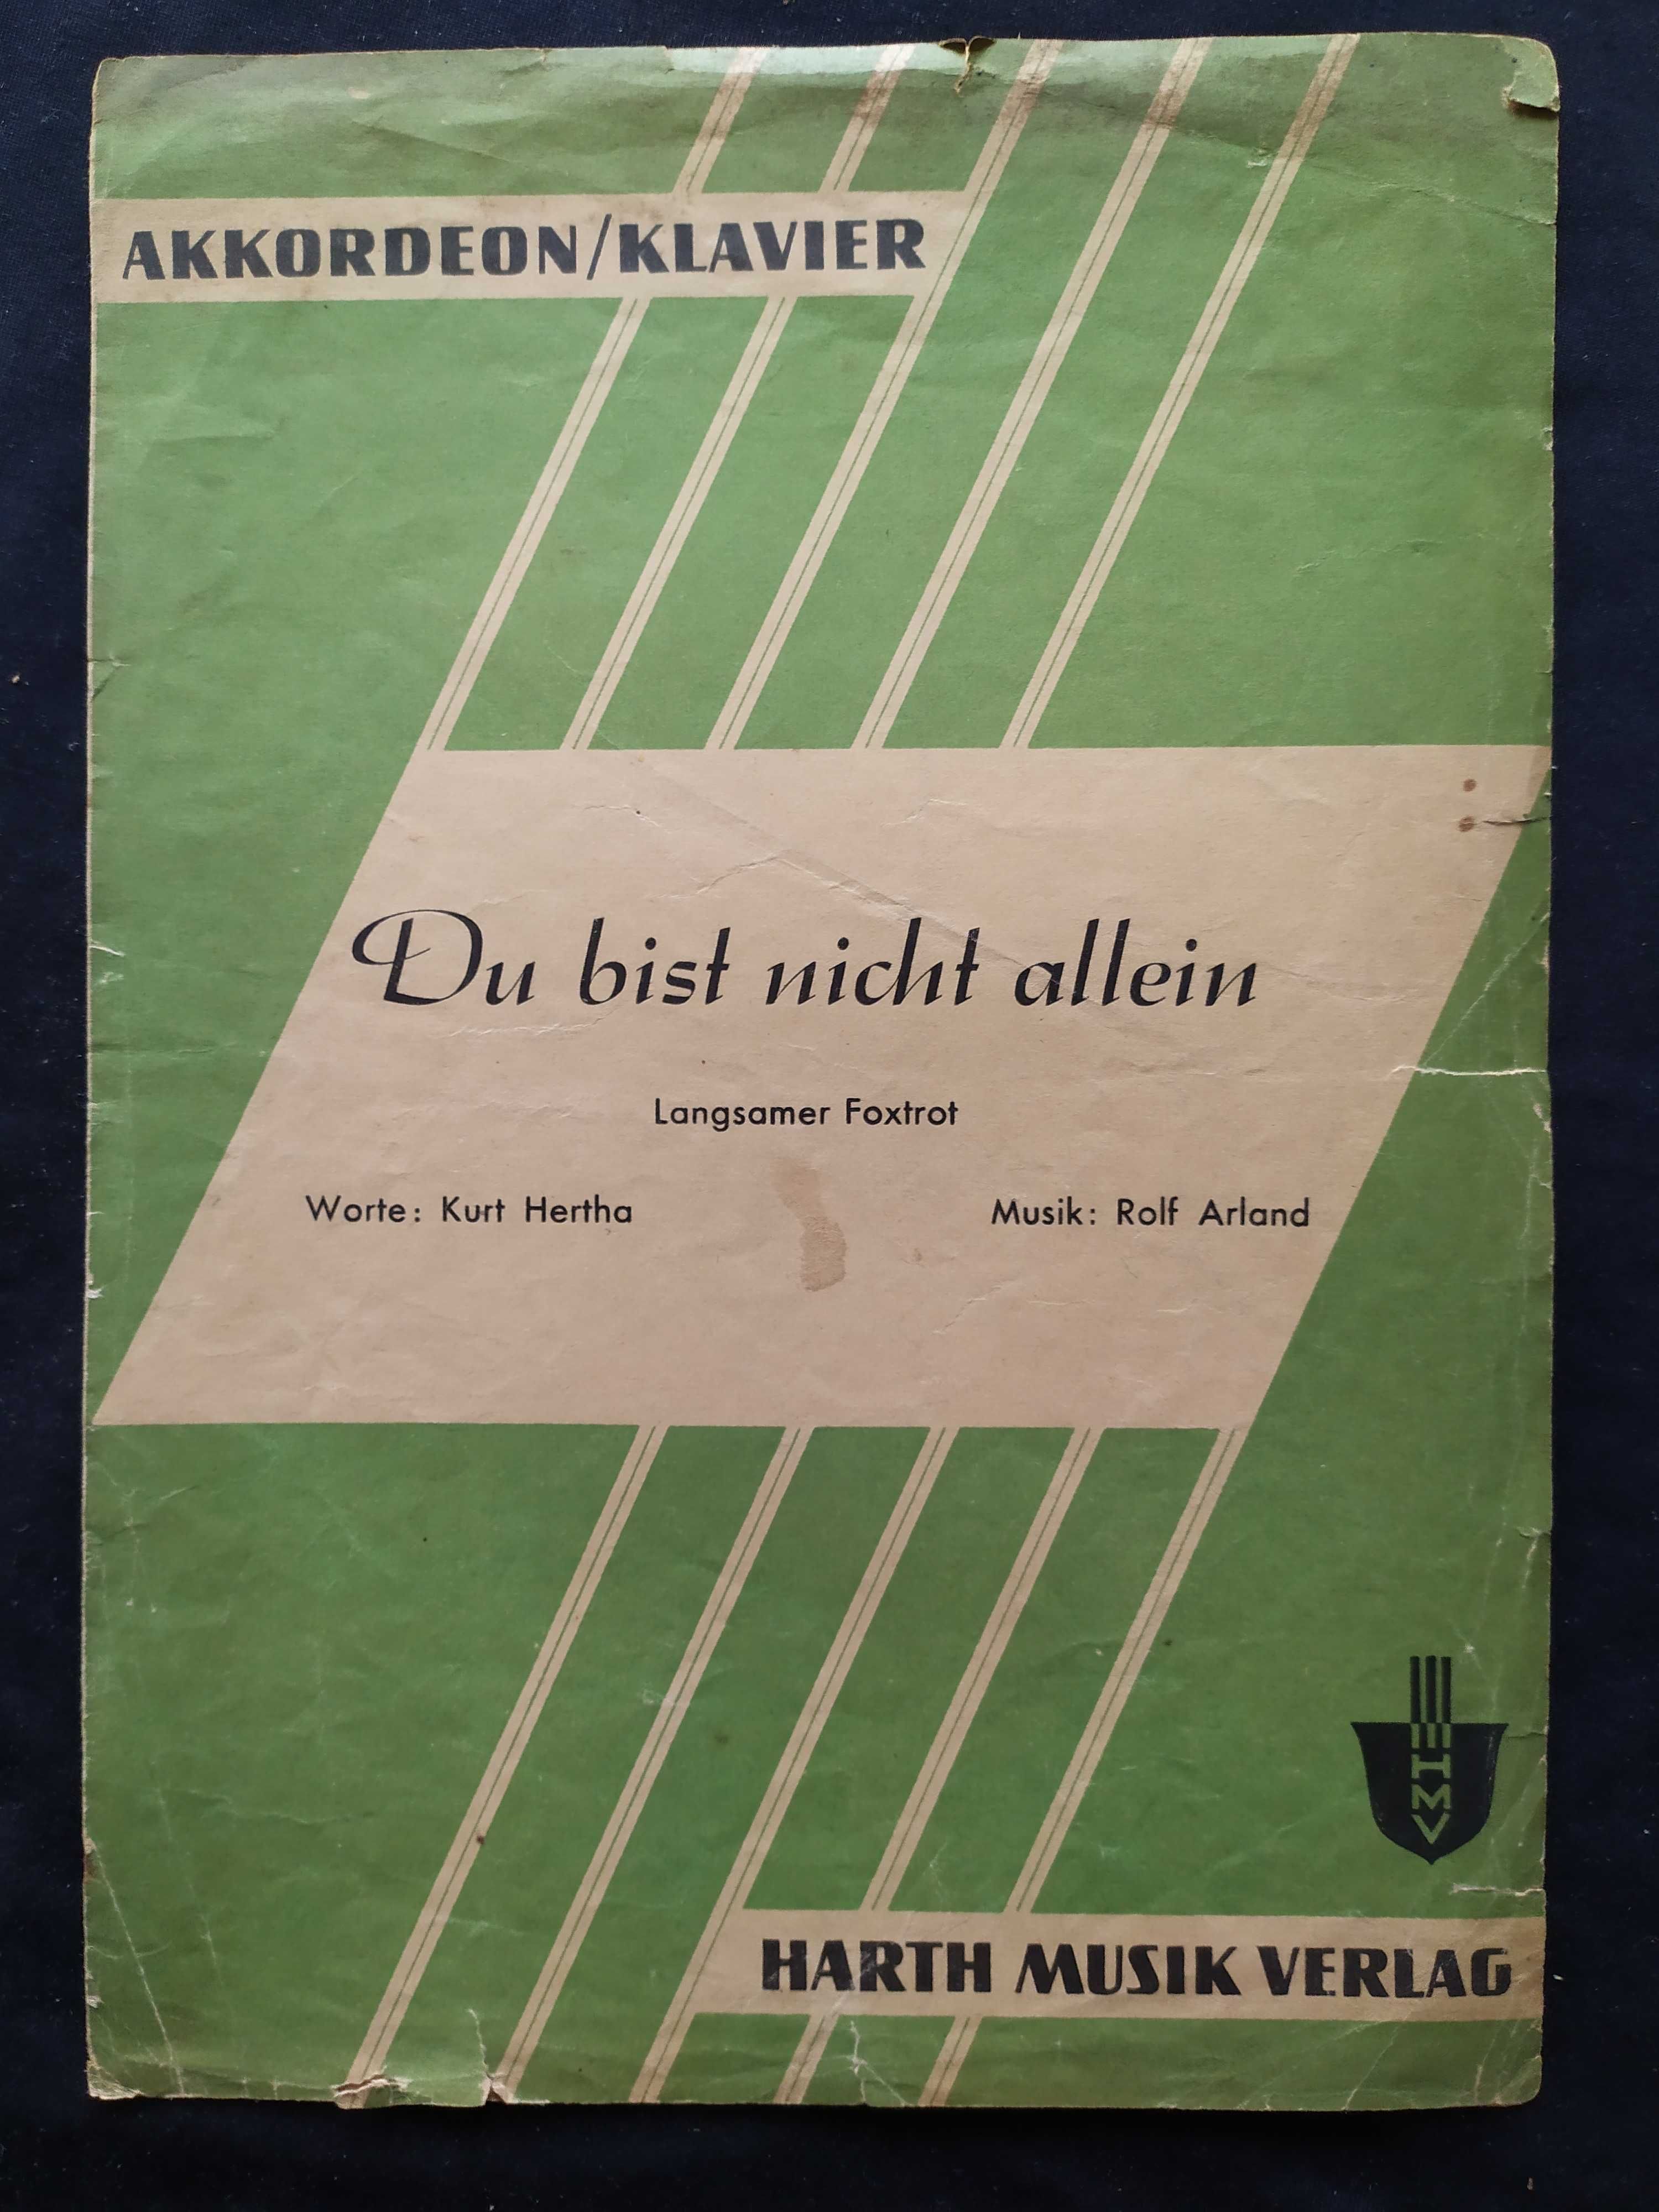 akkordeon/klavier, Du bist nicht allein, harth musik verlag, NUTY 1965